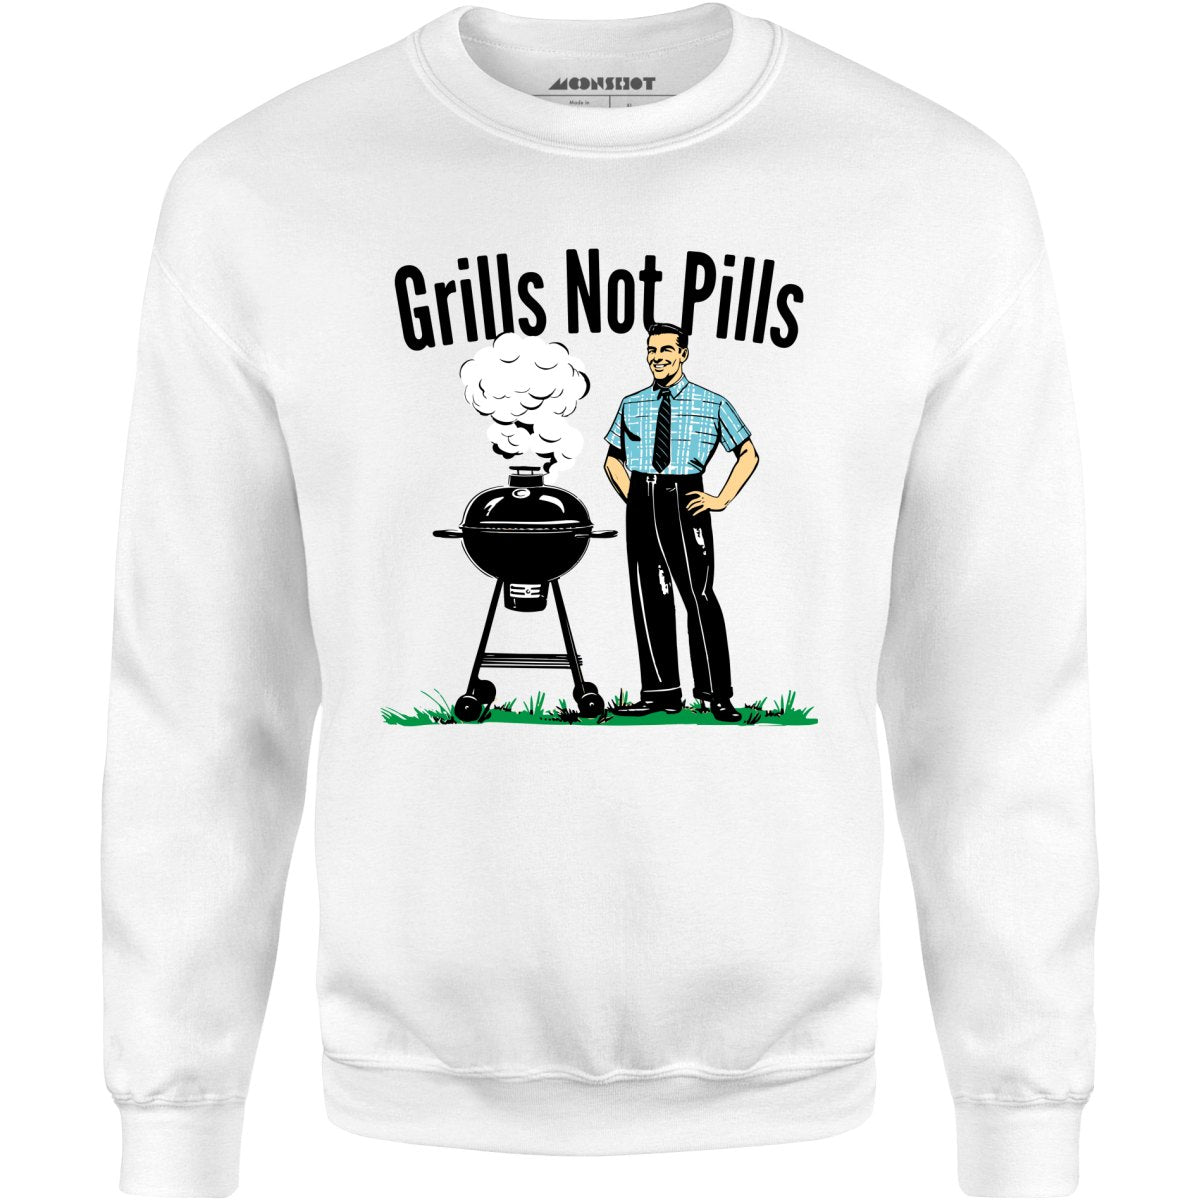 Grills Not Pills - Unisex Sweatshirt